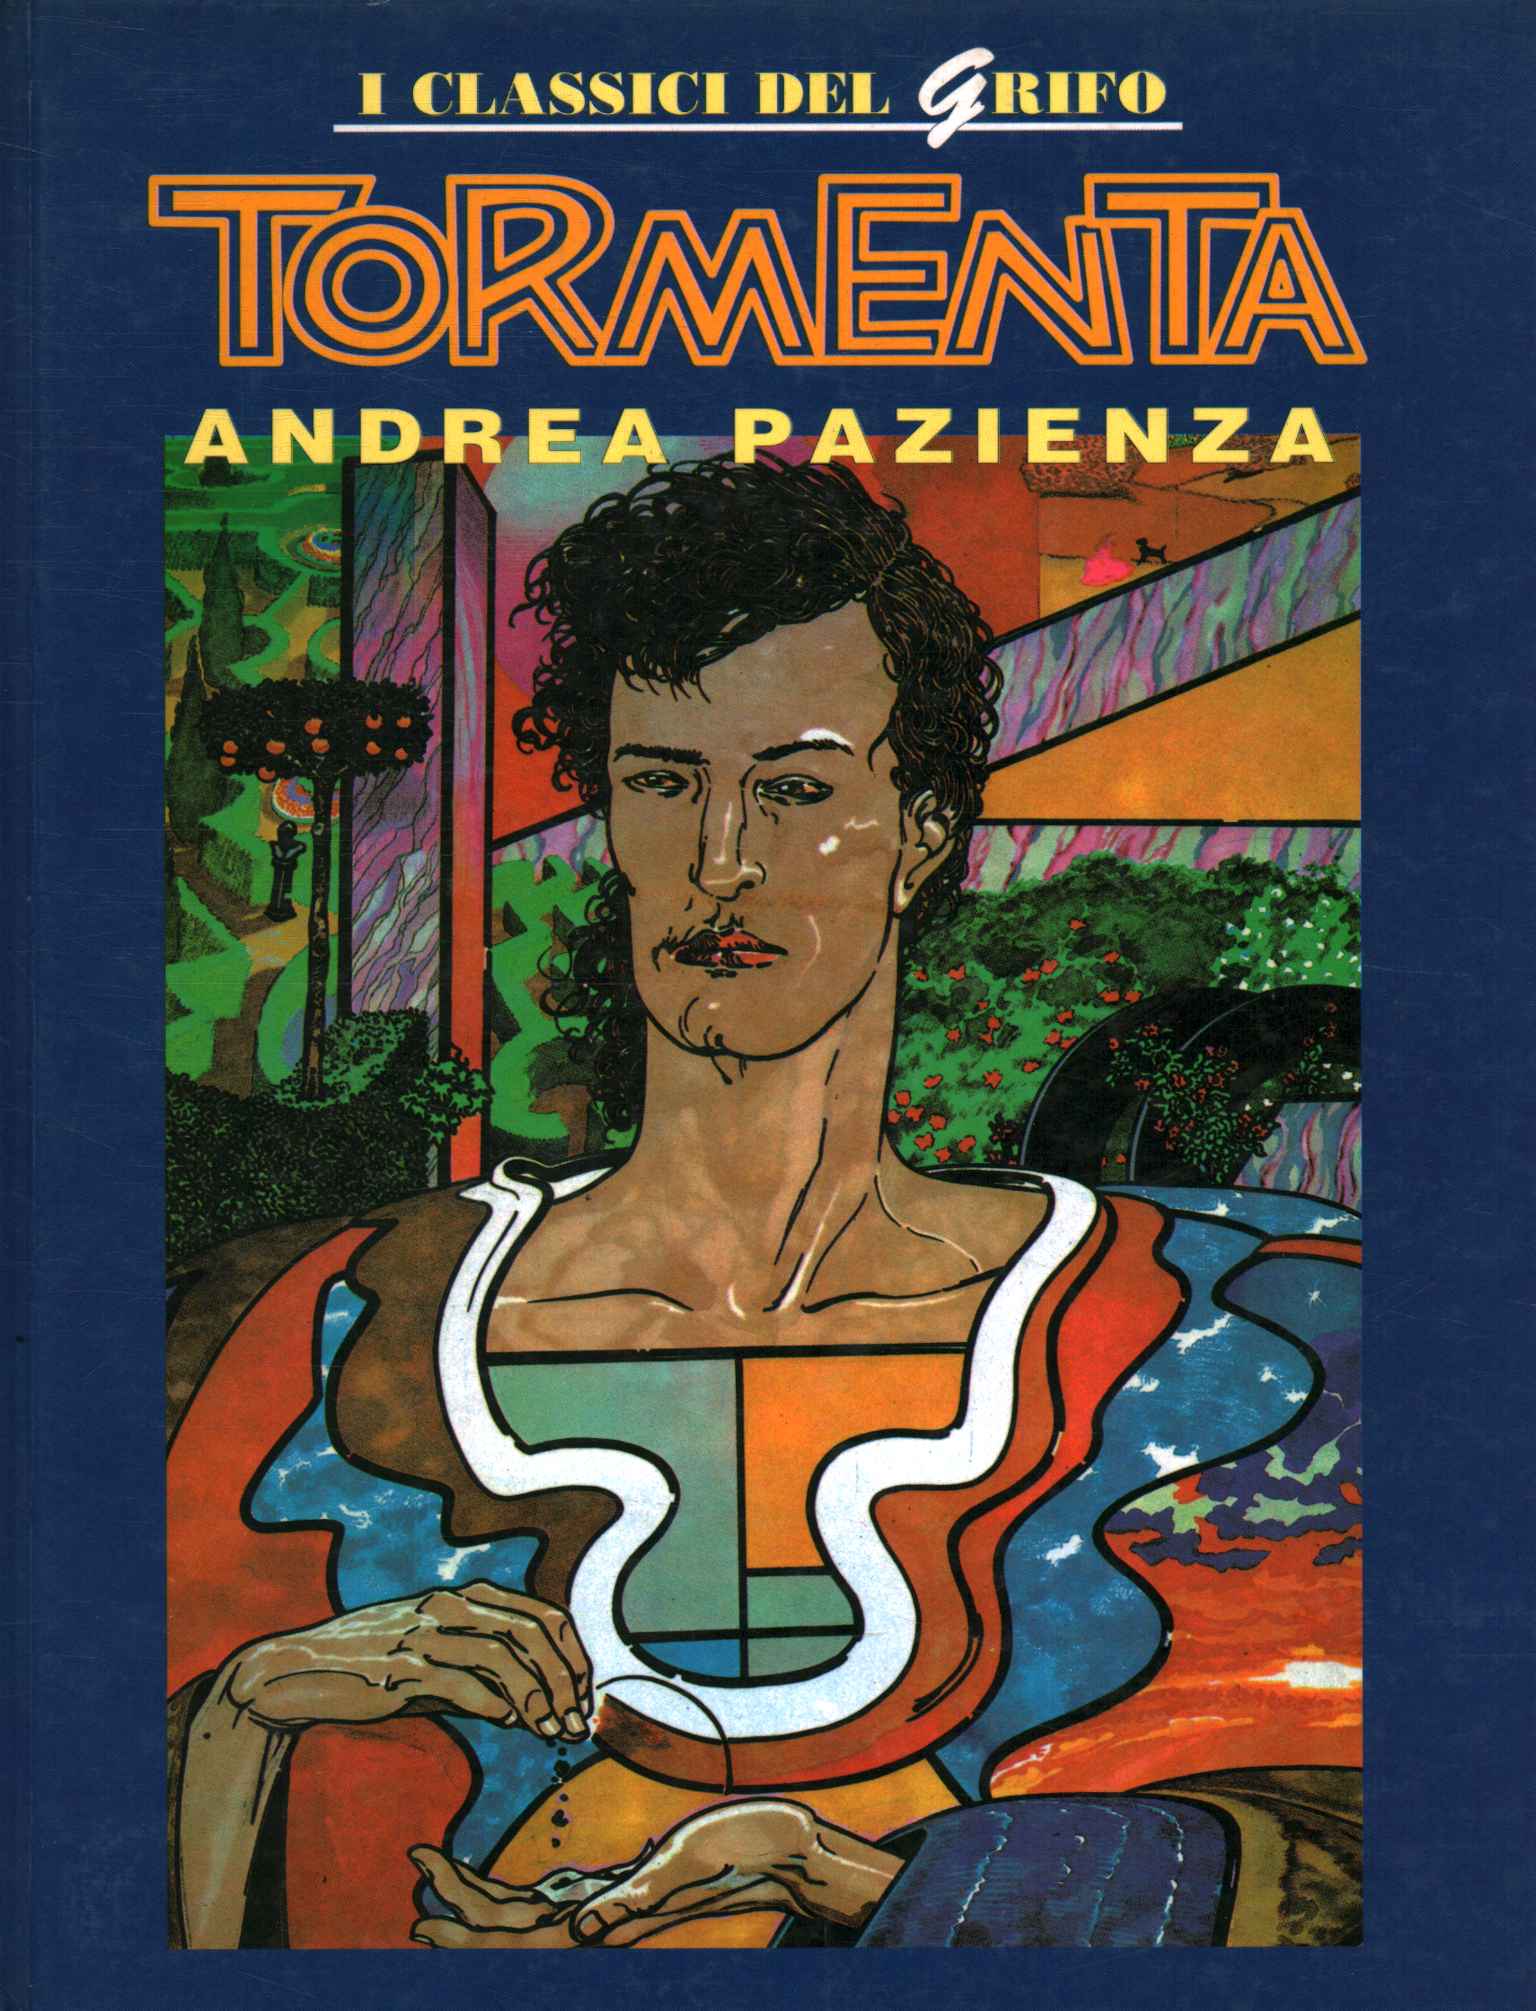 Tormenta - Andrea Pazienza (Editori del Grifo) [1992]